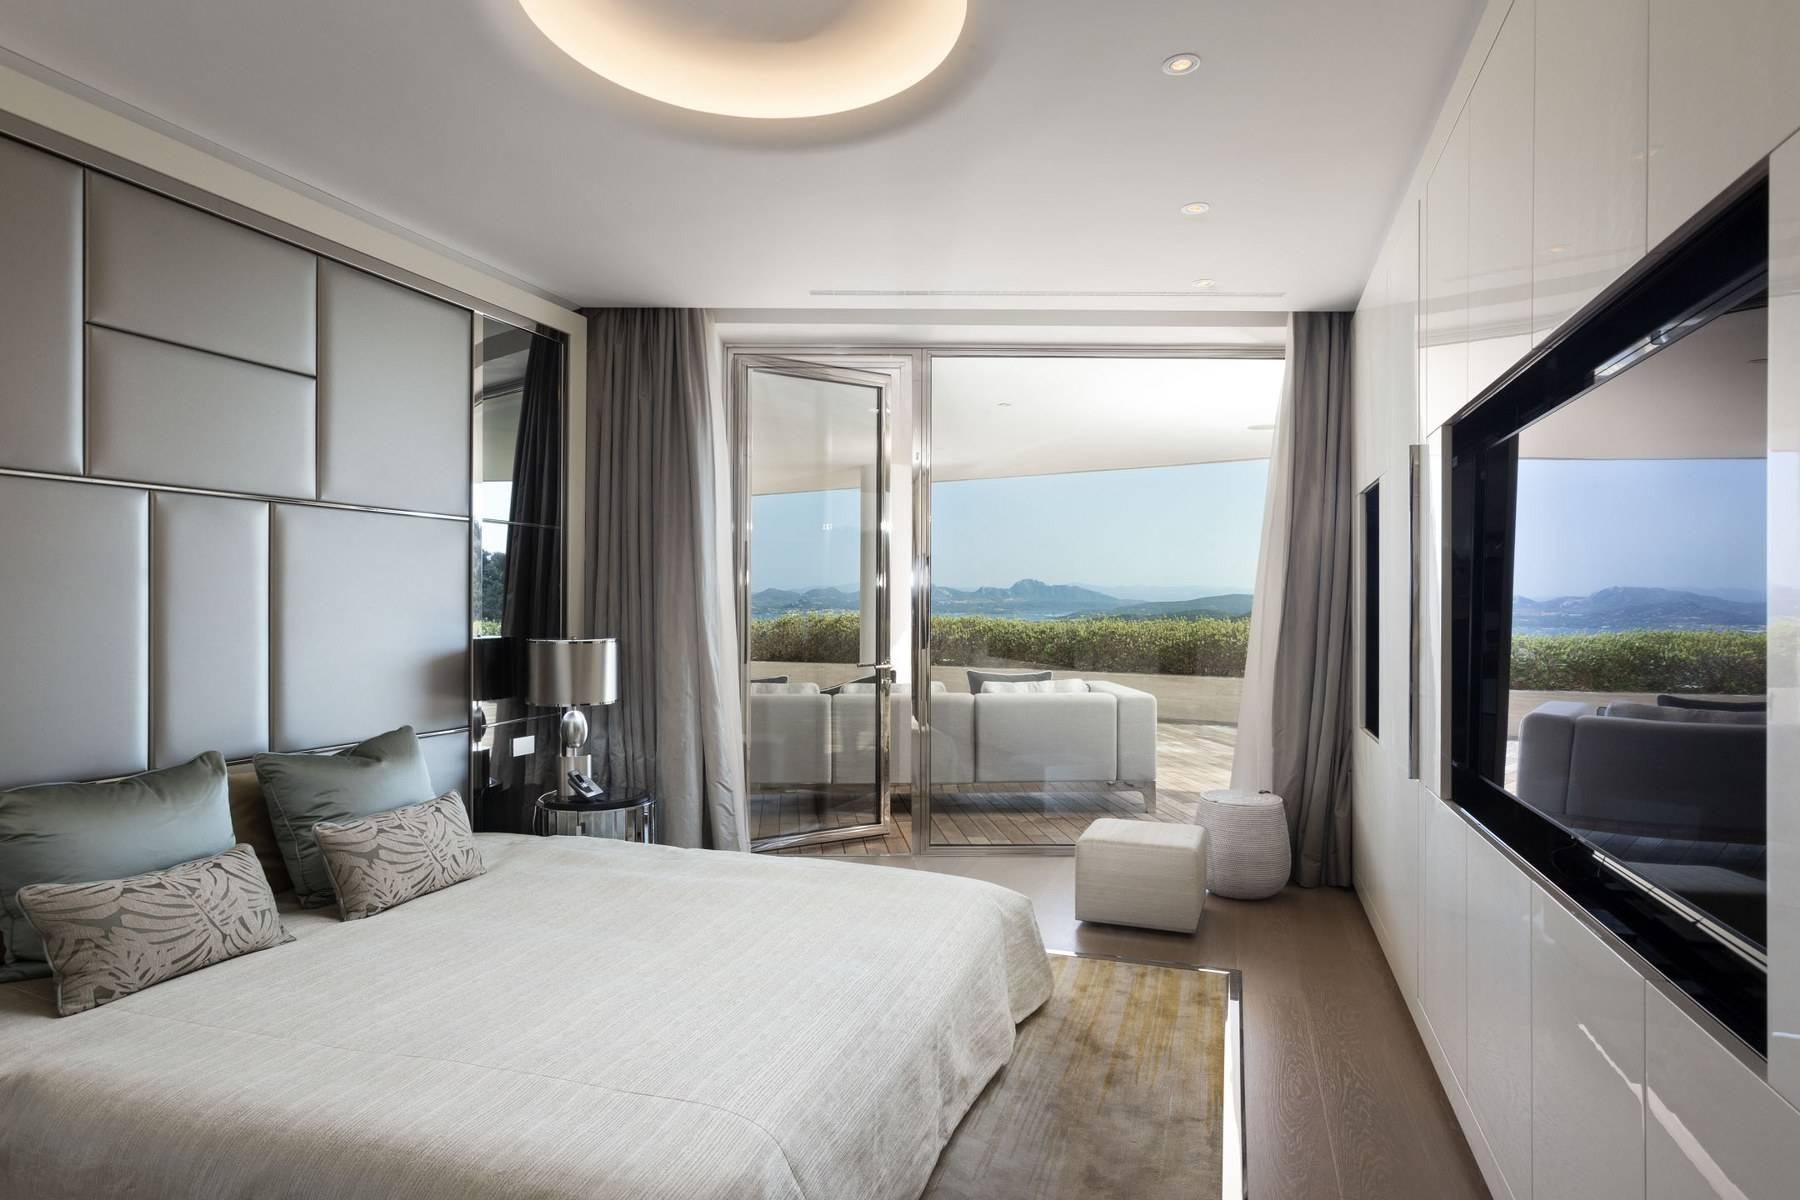 Glamour - Prestigious and elegant villa located in the heart of the Costa Smeralda - 6